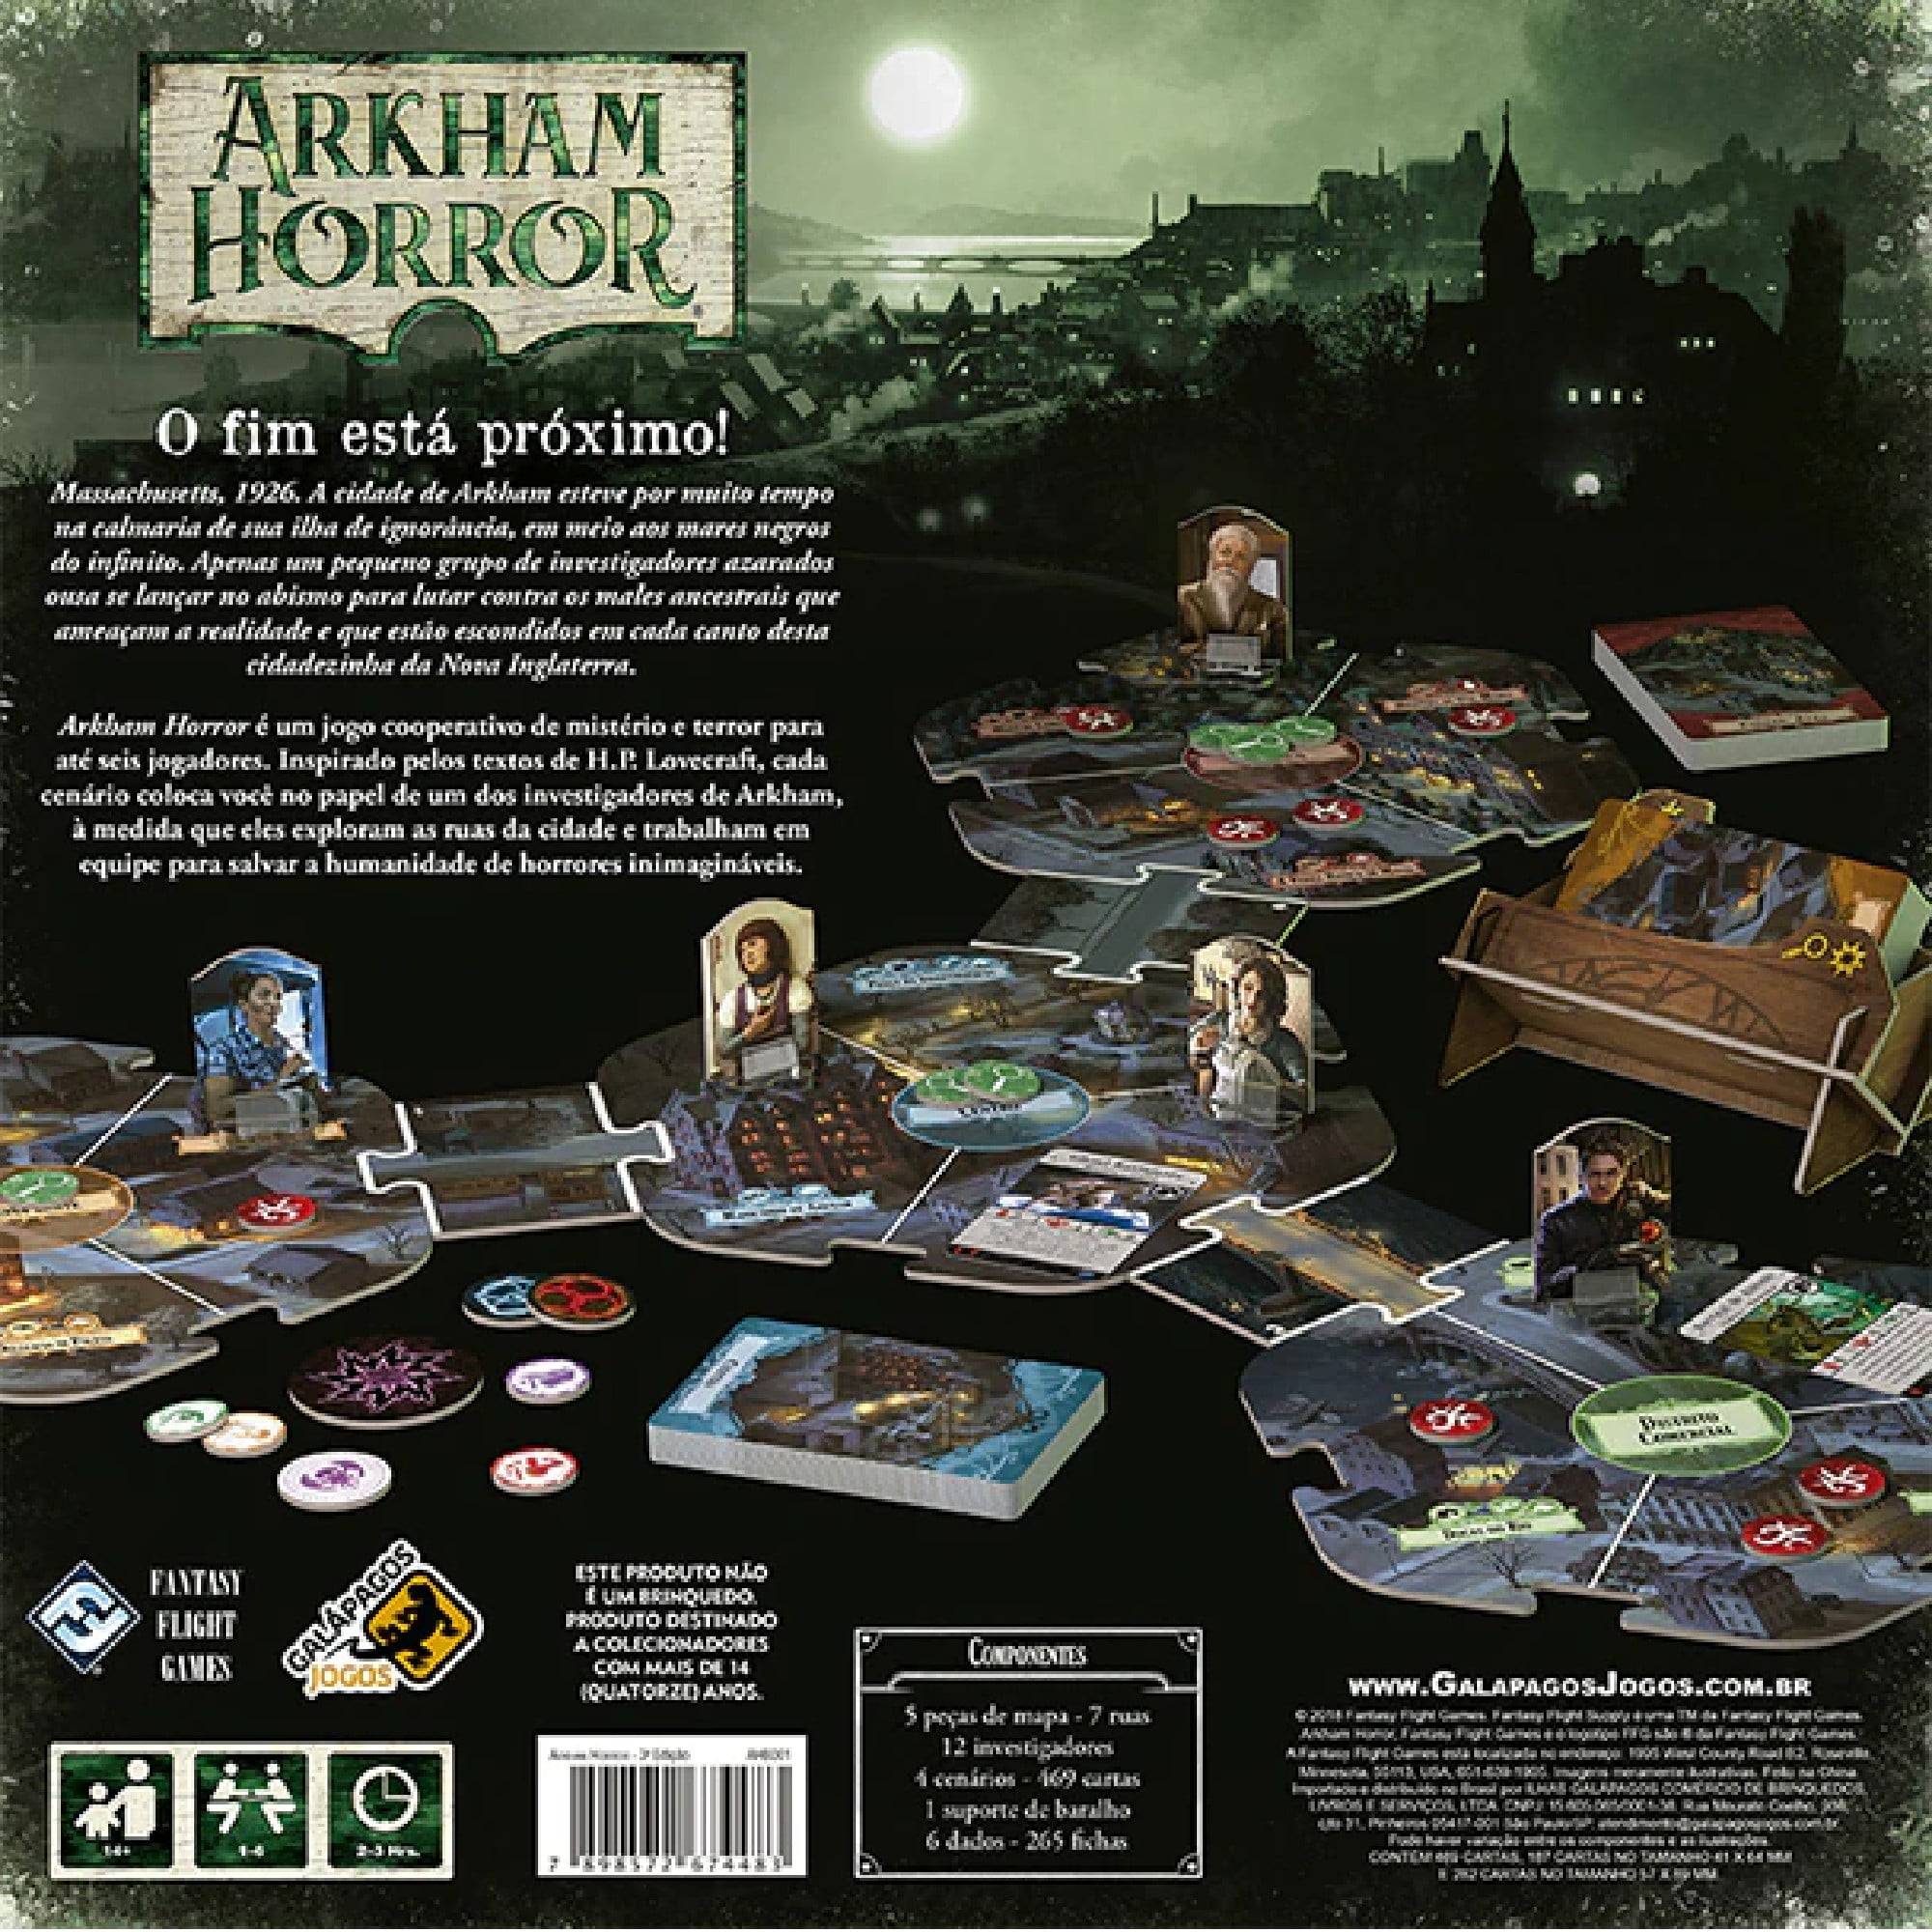 Arkham Horror Jogo De Tabuleiro Em Miniatura Investigador 1/64